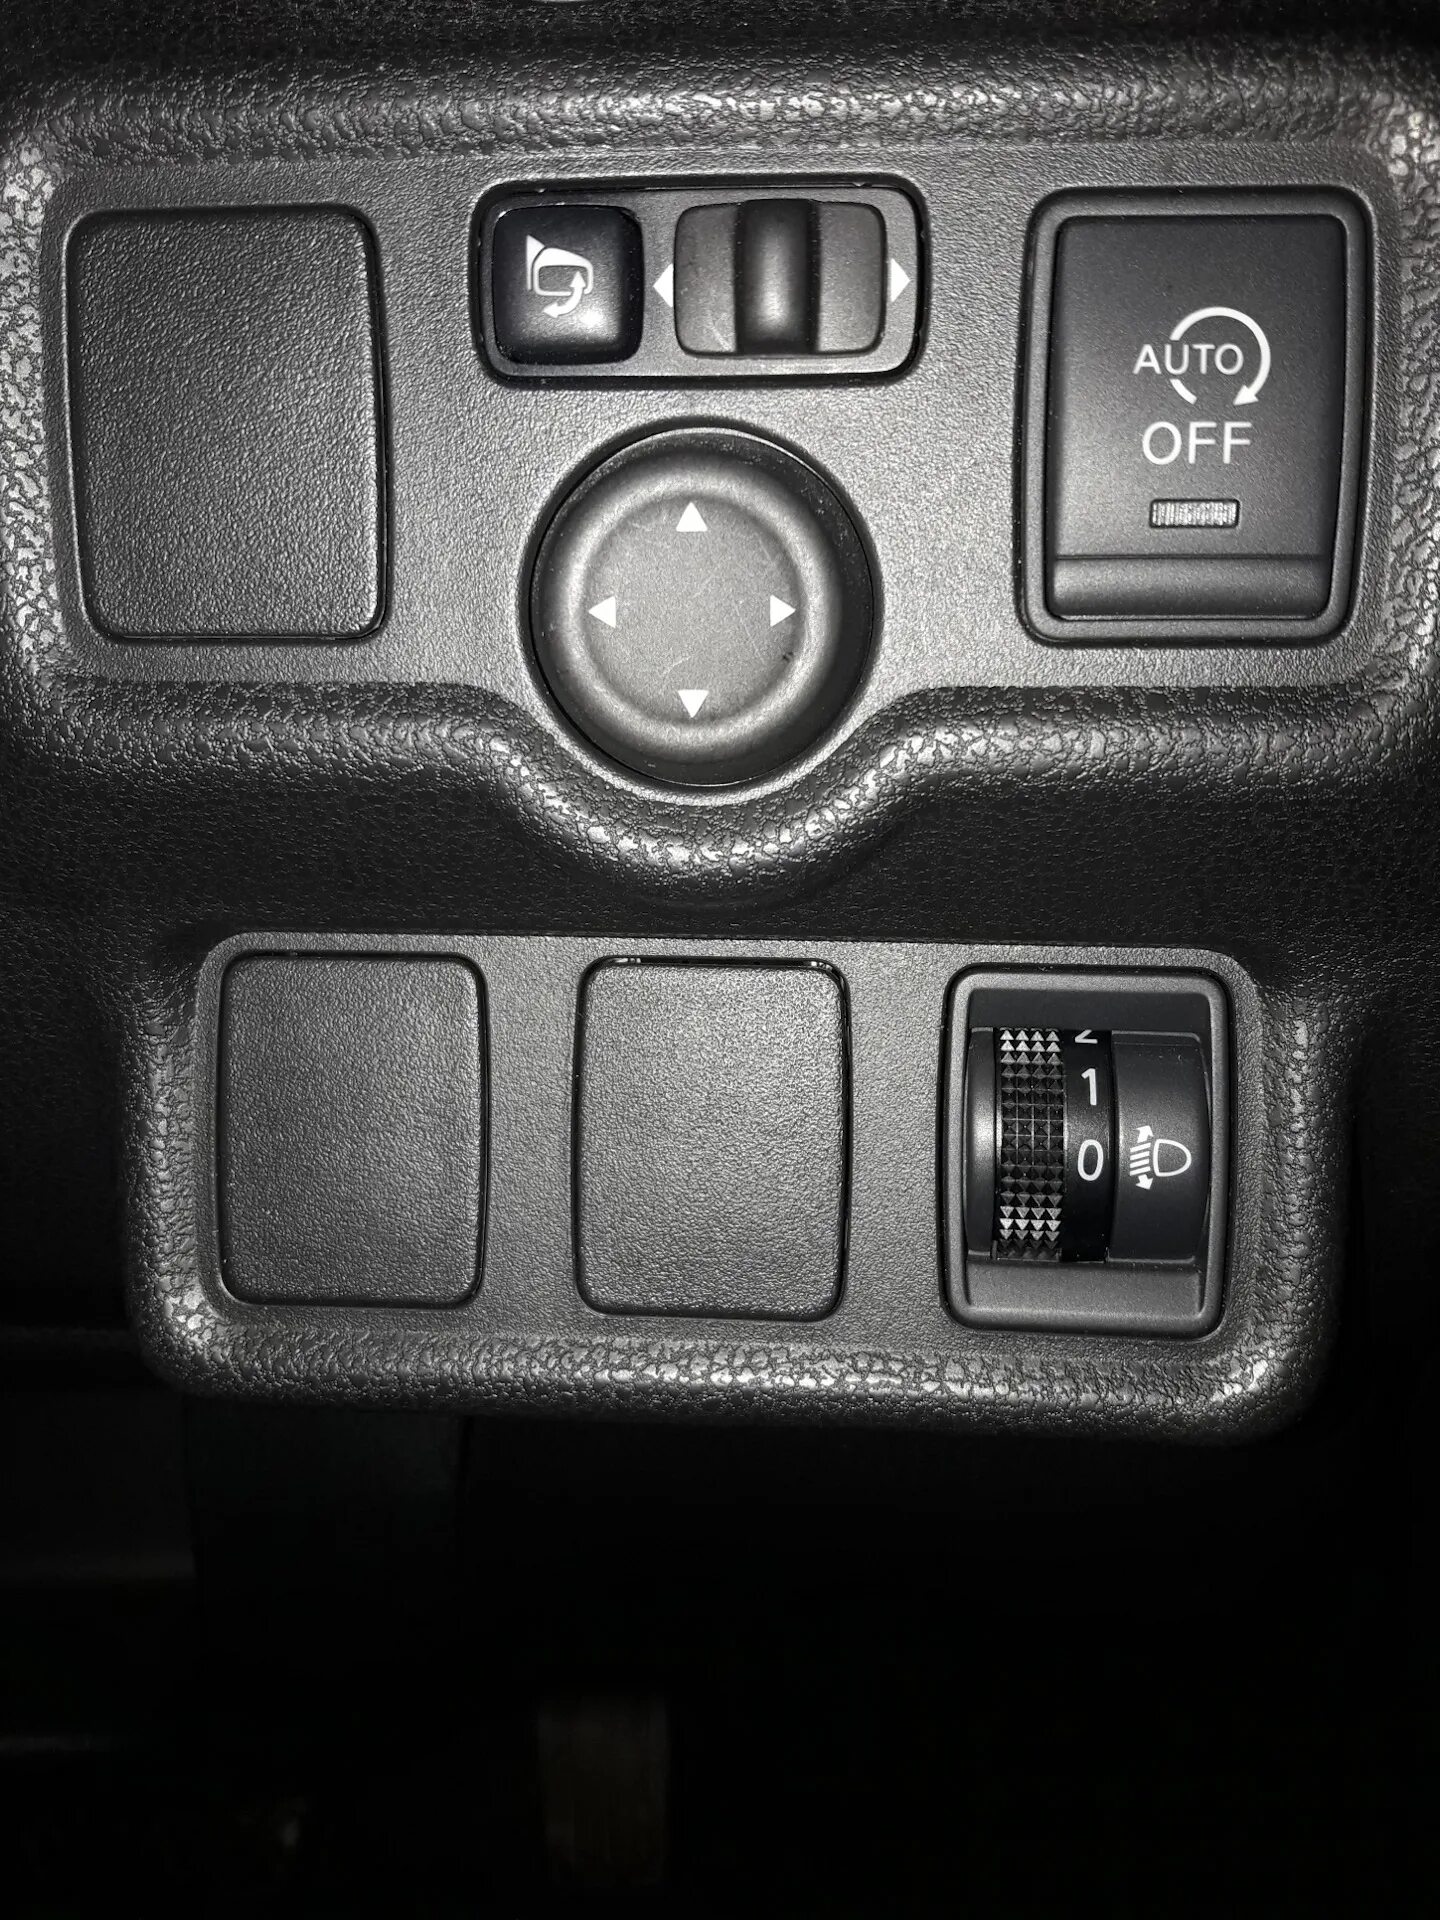 Automatic off. Кнопка auto off Nissan Note. Кнопка эко Ниссан ноте е 12. Кнопки на панели управления Nissan Note. Ниссан ноут 2013 кнопки.